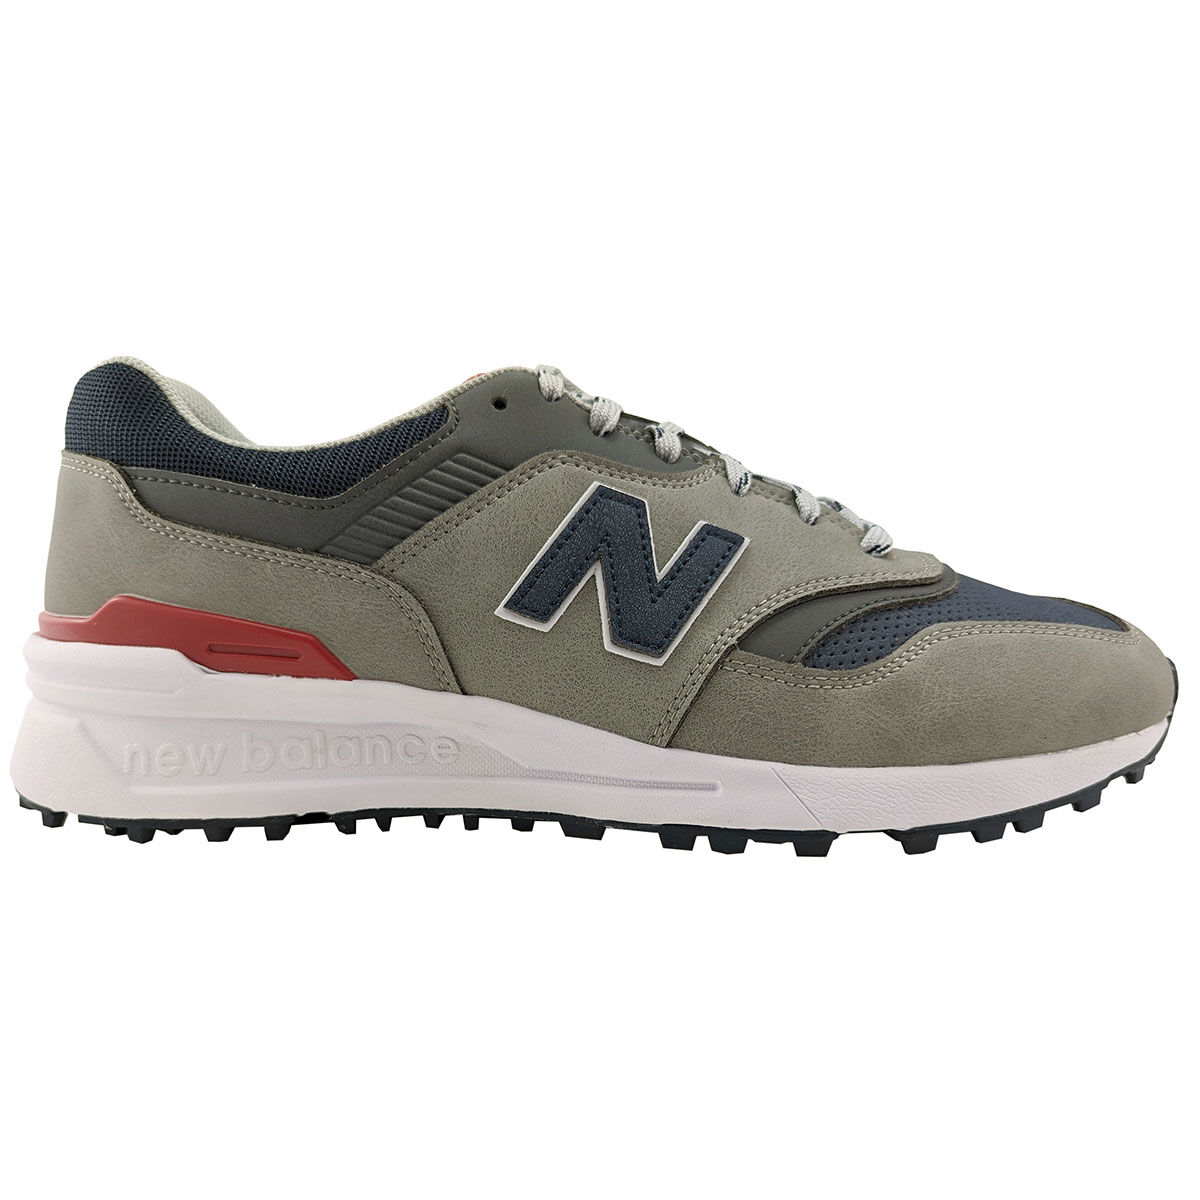 New Balance Men’s 997 Waterproof Spikeless Golf Shoes, Mens, Grey/navy, 9 | American Golf